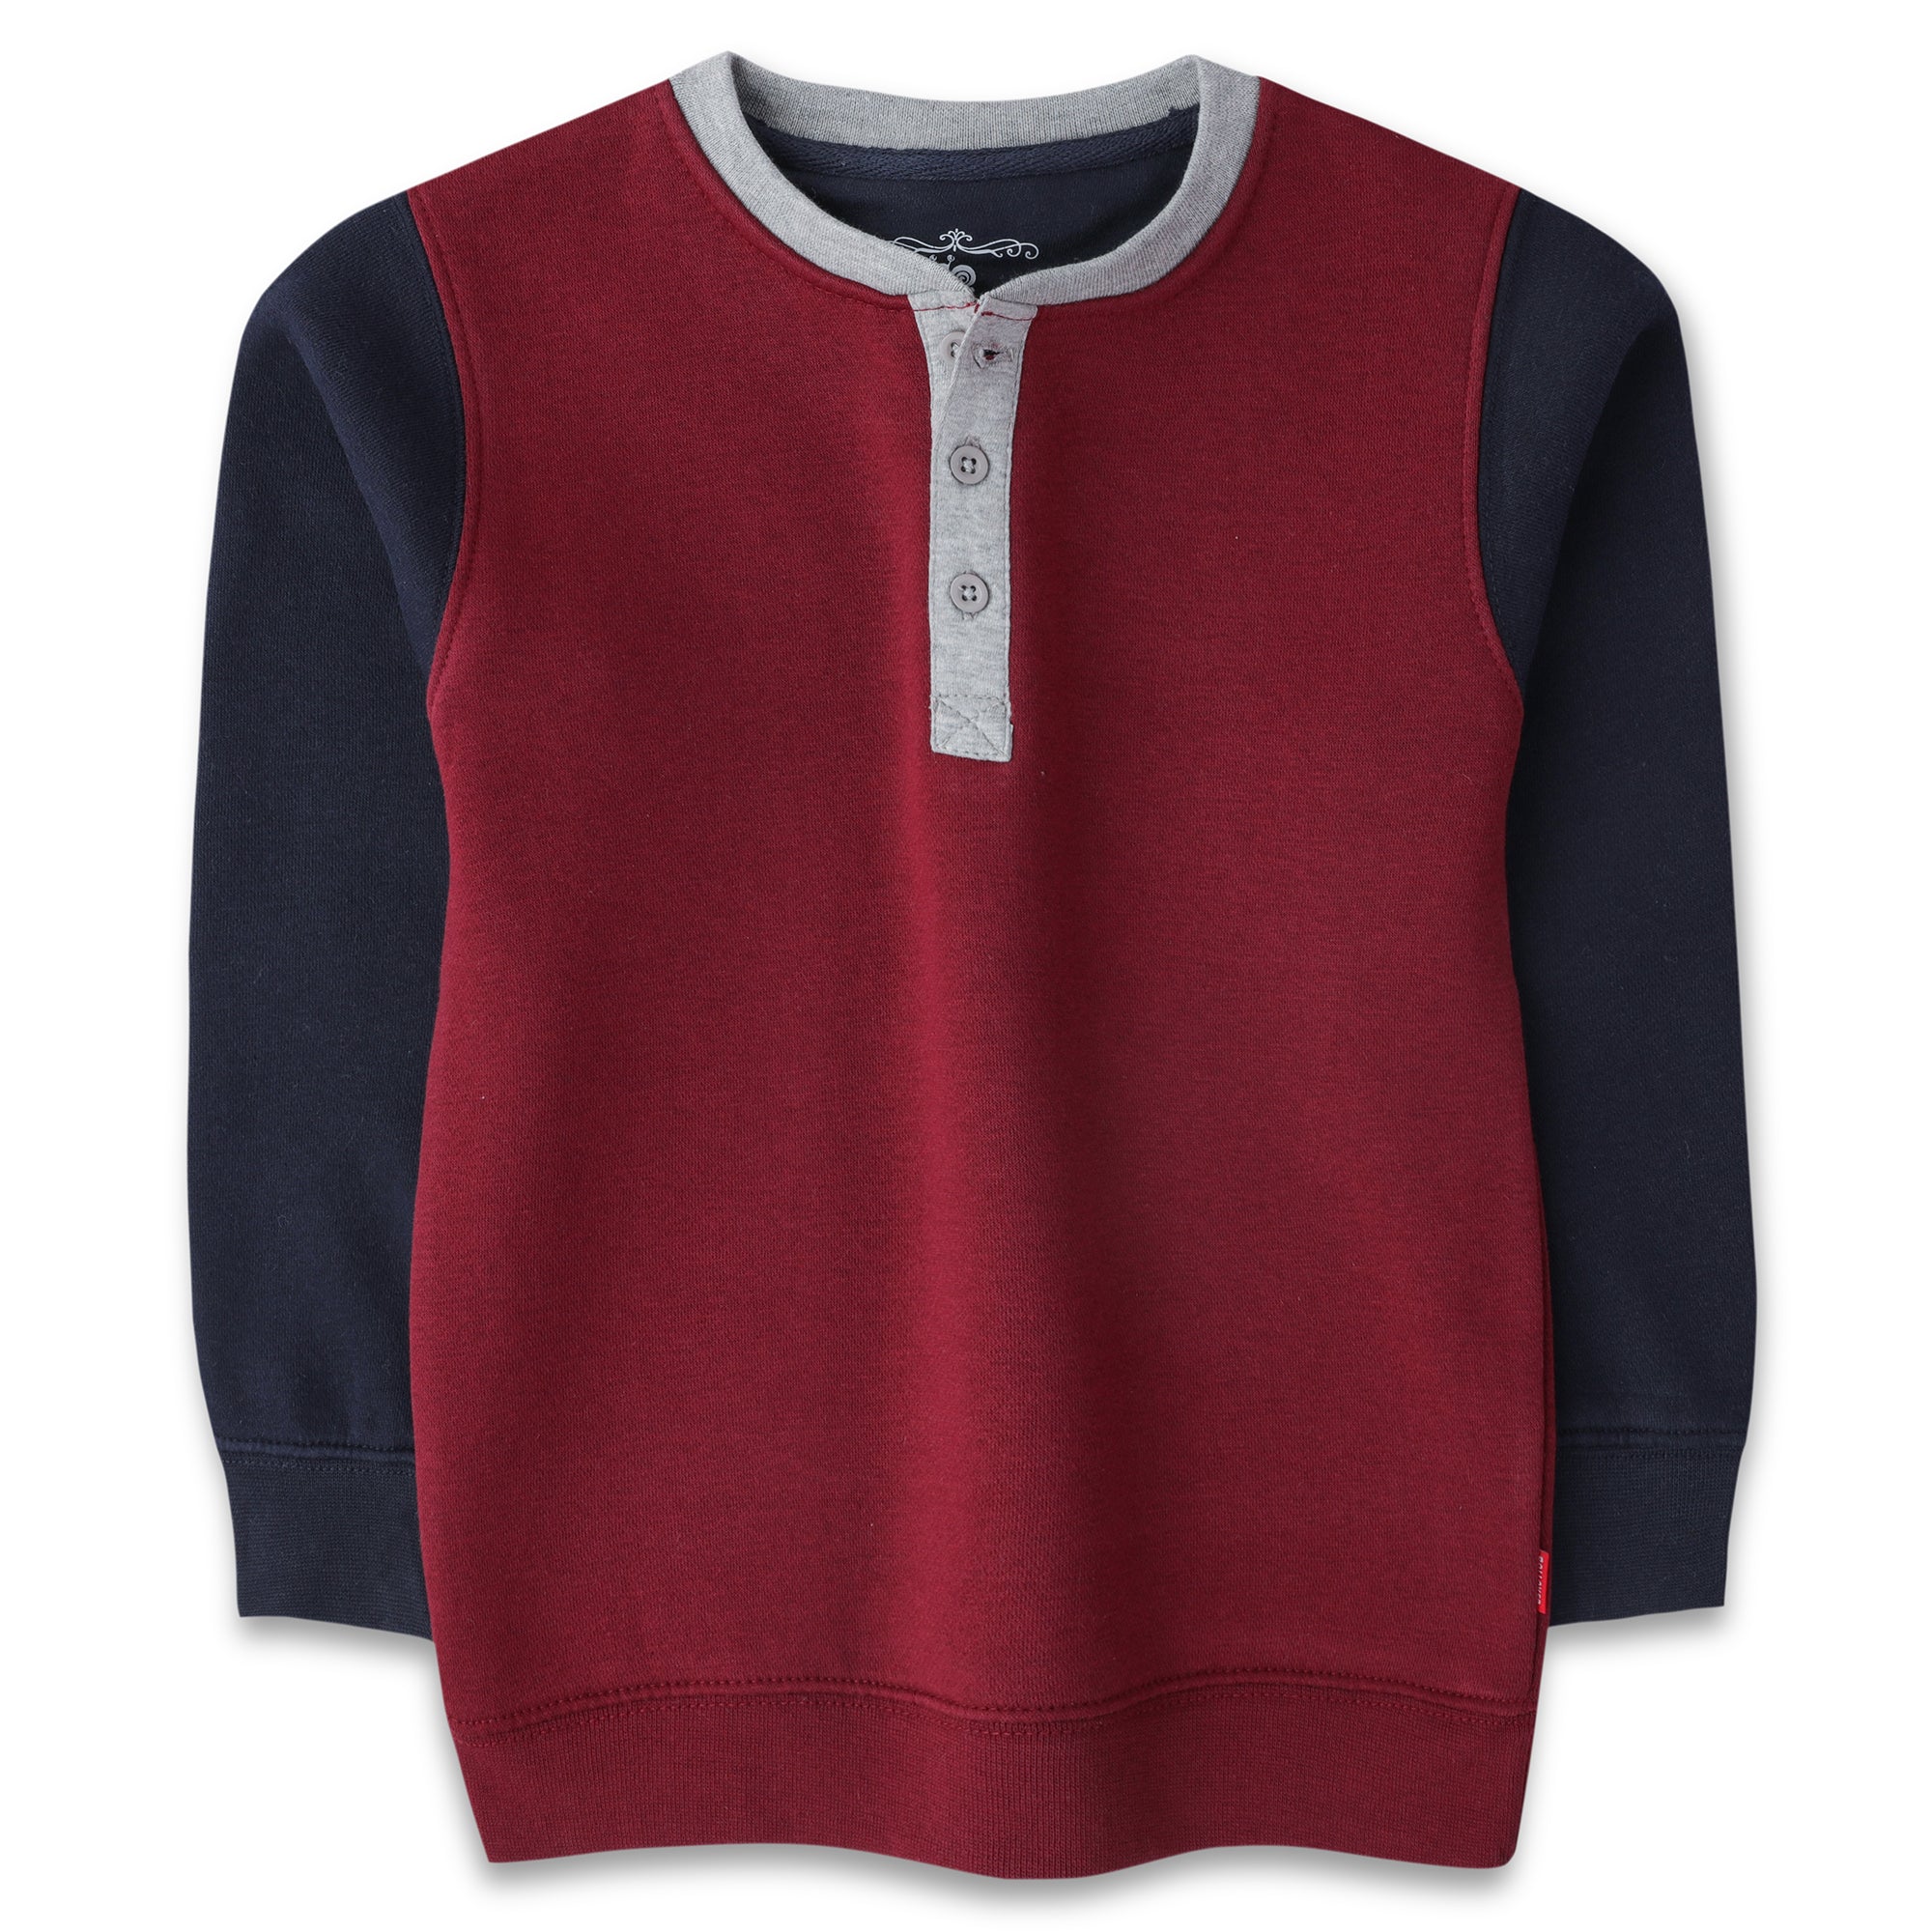 Red/Grey Fleece Boys Sweatshirt